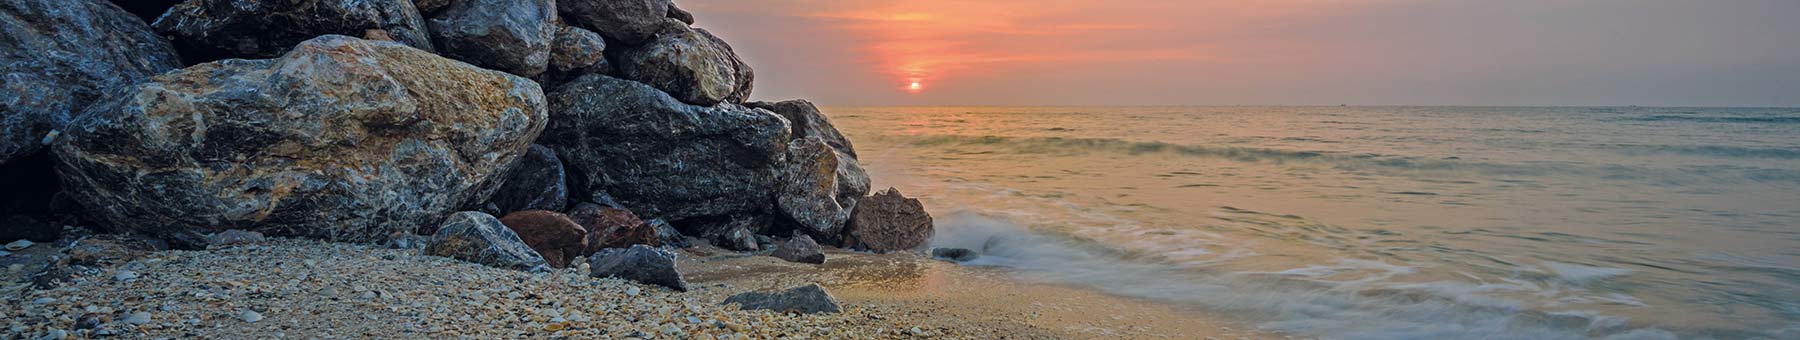 the sun setting over a rocky beach